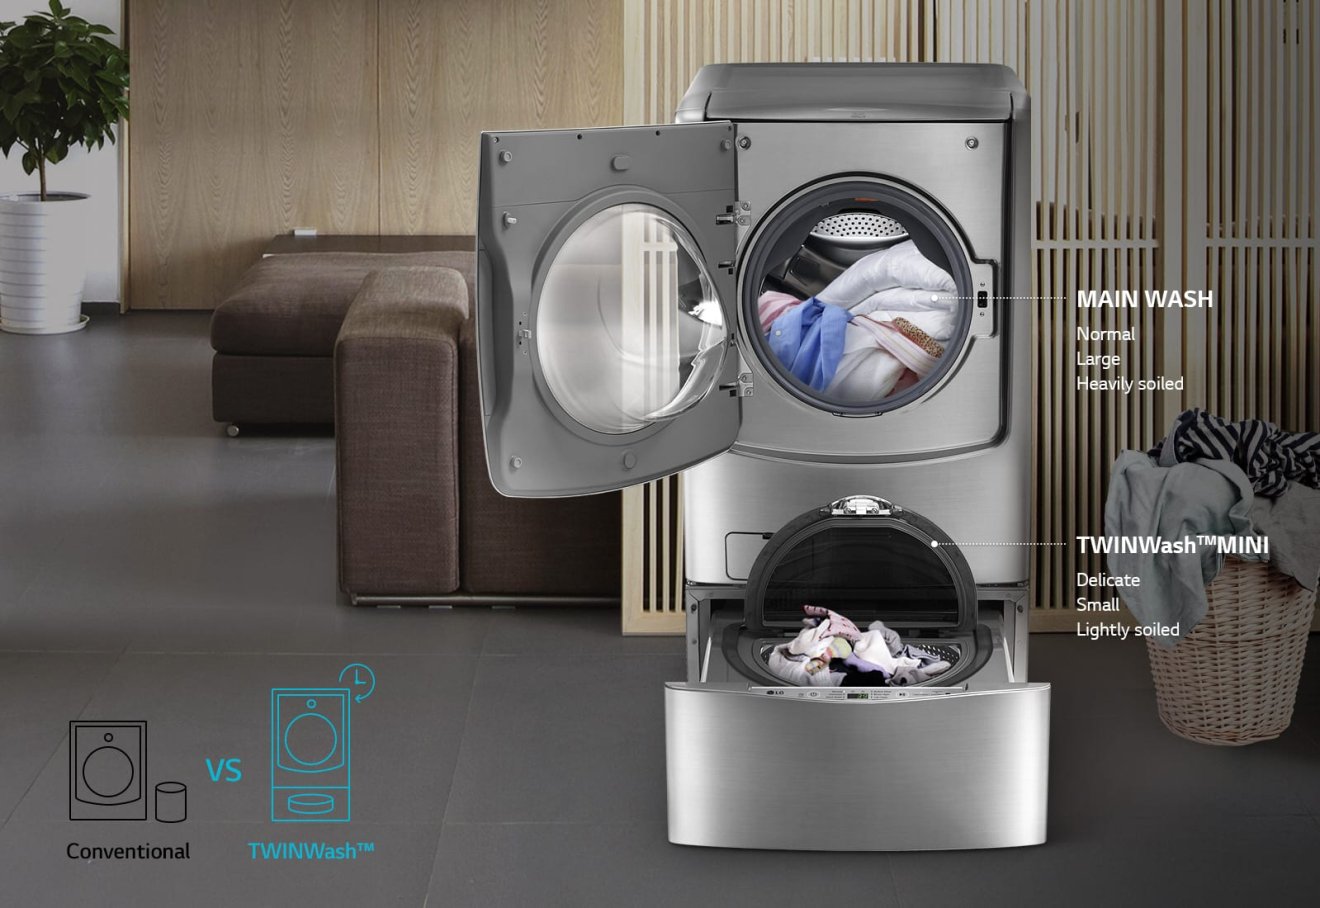 รีวิว LG TWIN Wash™ เครื่องซักผ้าสุดแปลก ซักผ้า 2 ถังได้ในครั้งเดียว!